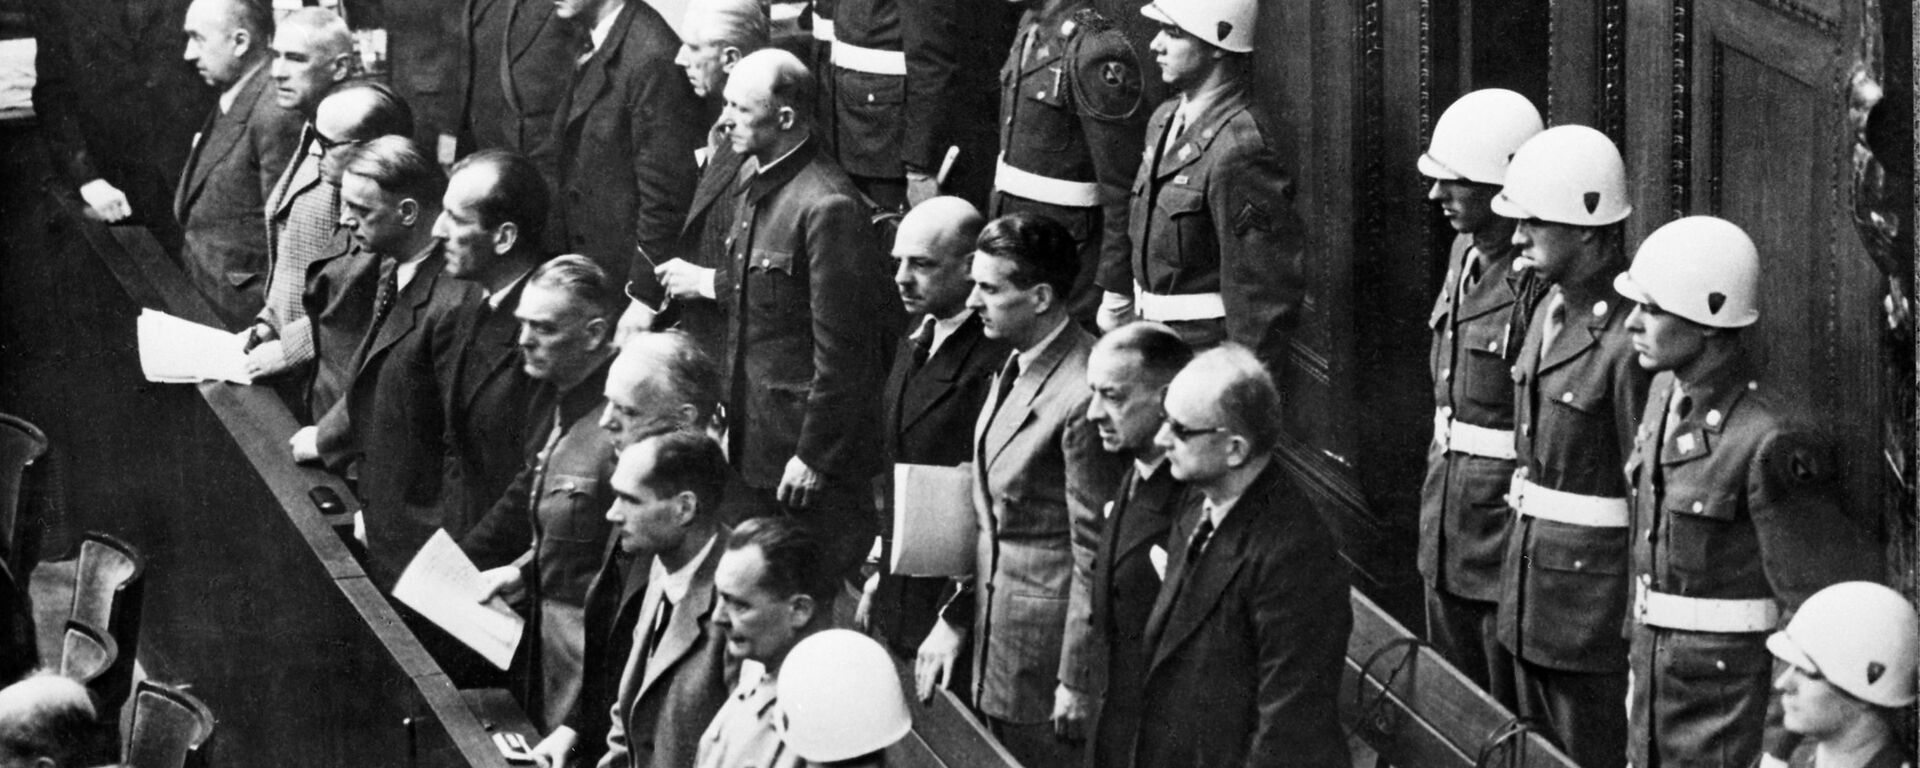 Нюрнбергский процесс (20 ноября 1945 г. - 1 октября 1946 г.) - Sputnik Латвия, 1920, 04.01.2021